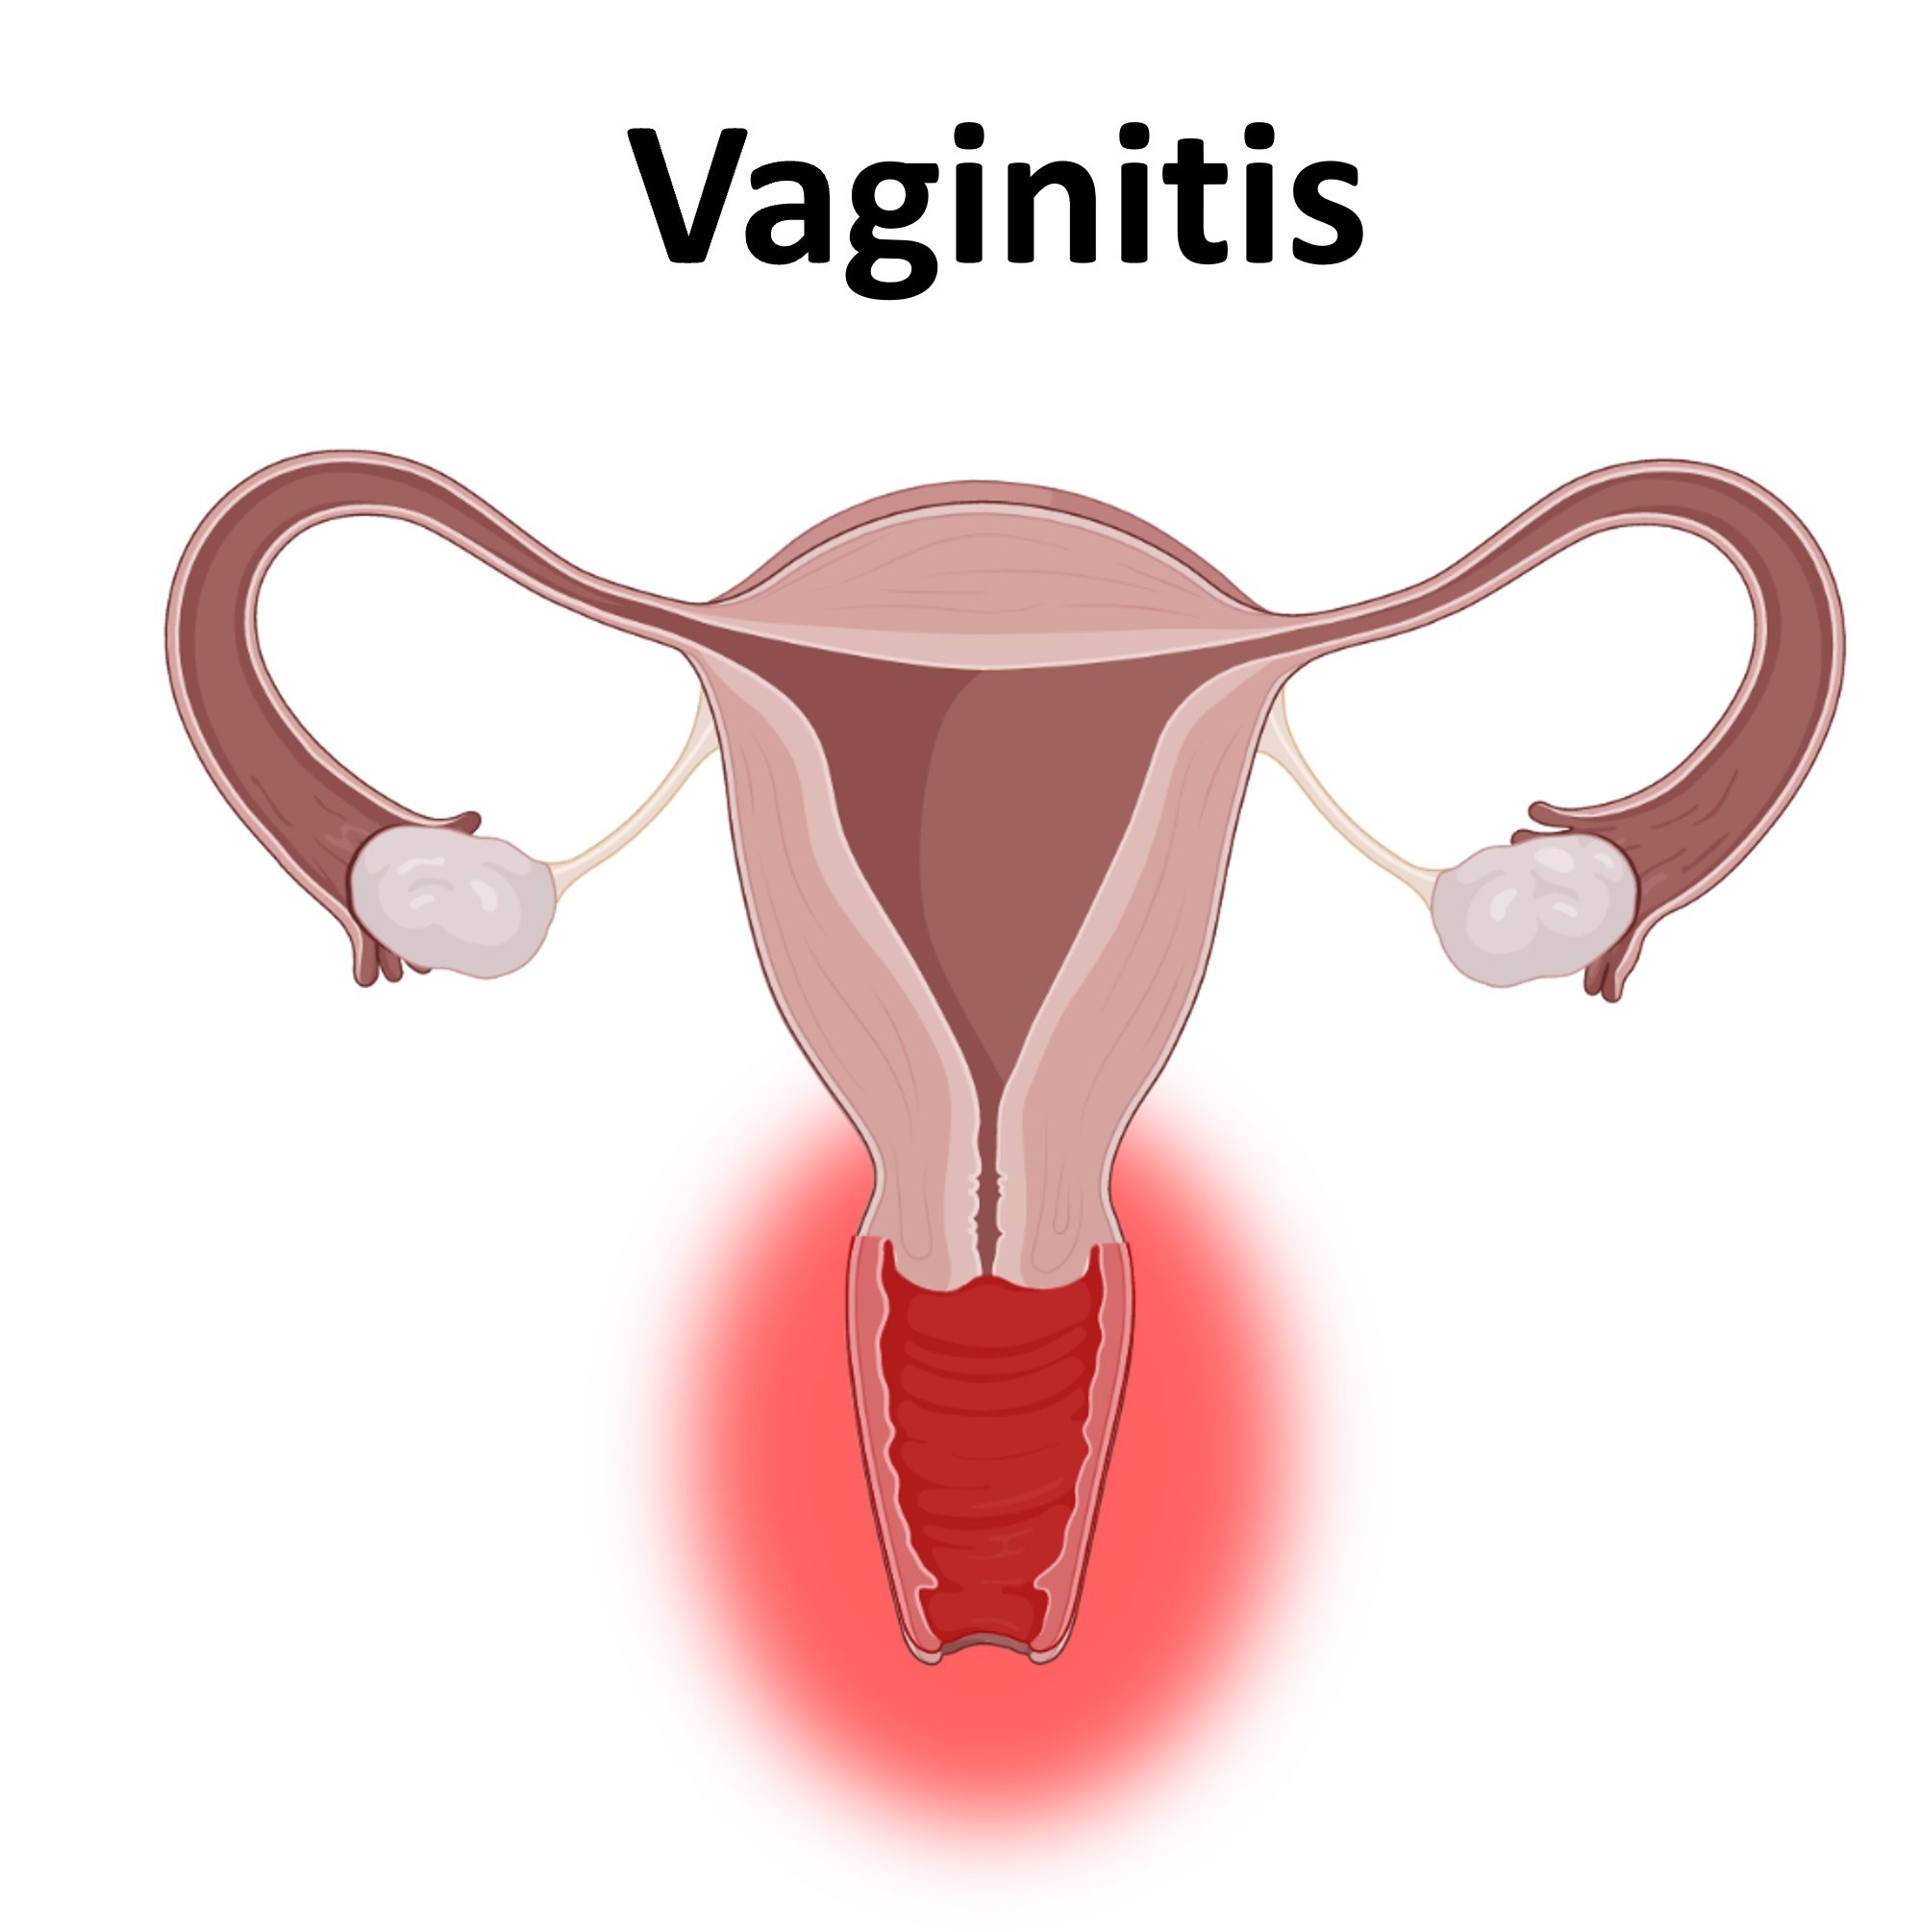 Atrophic vaginitis - Wikipedia